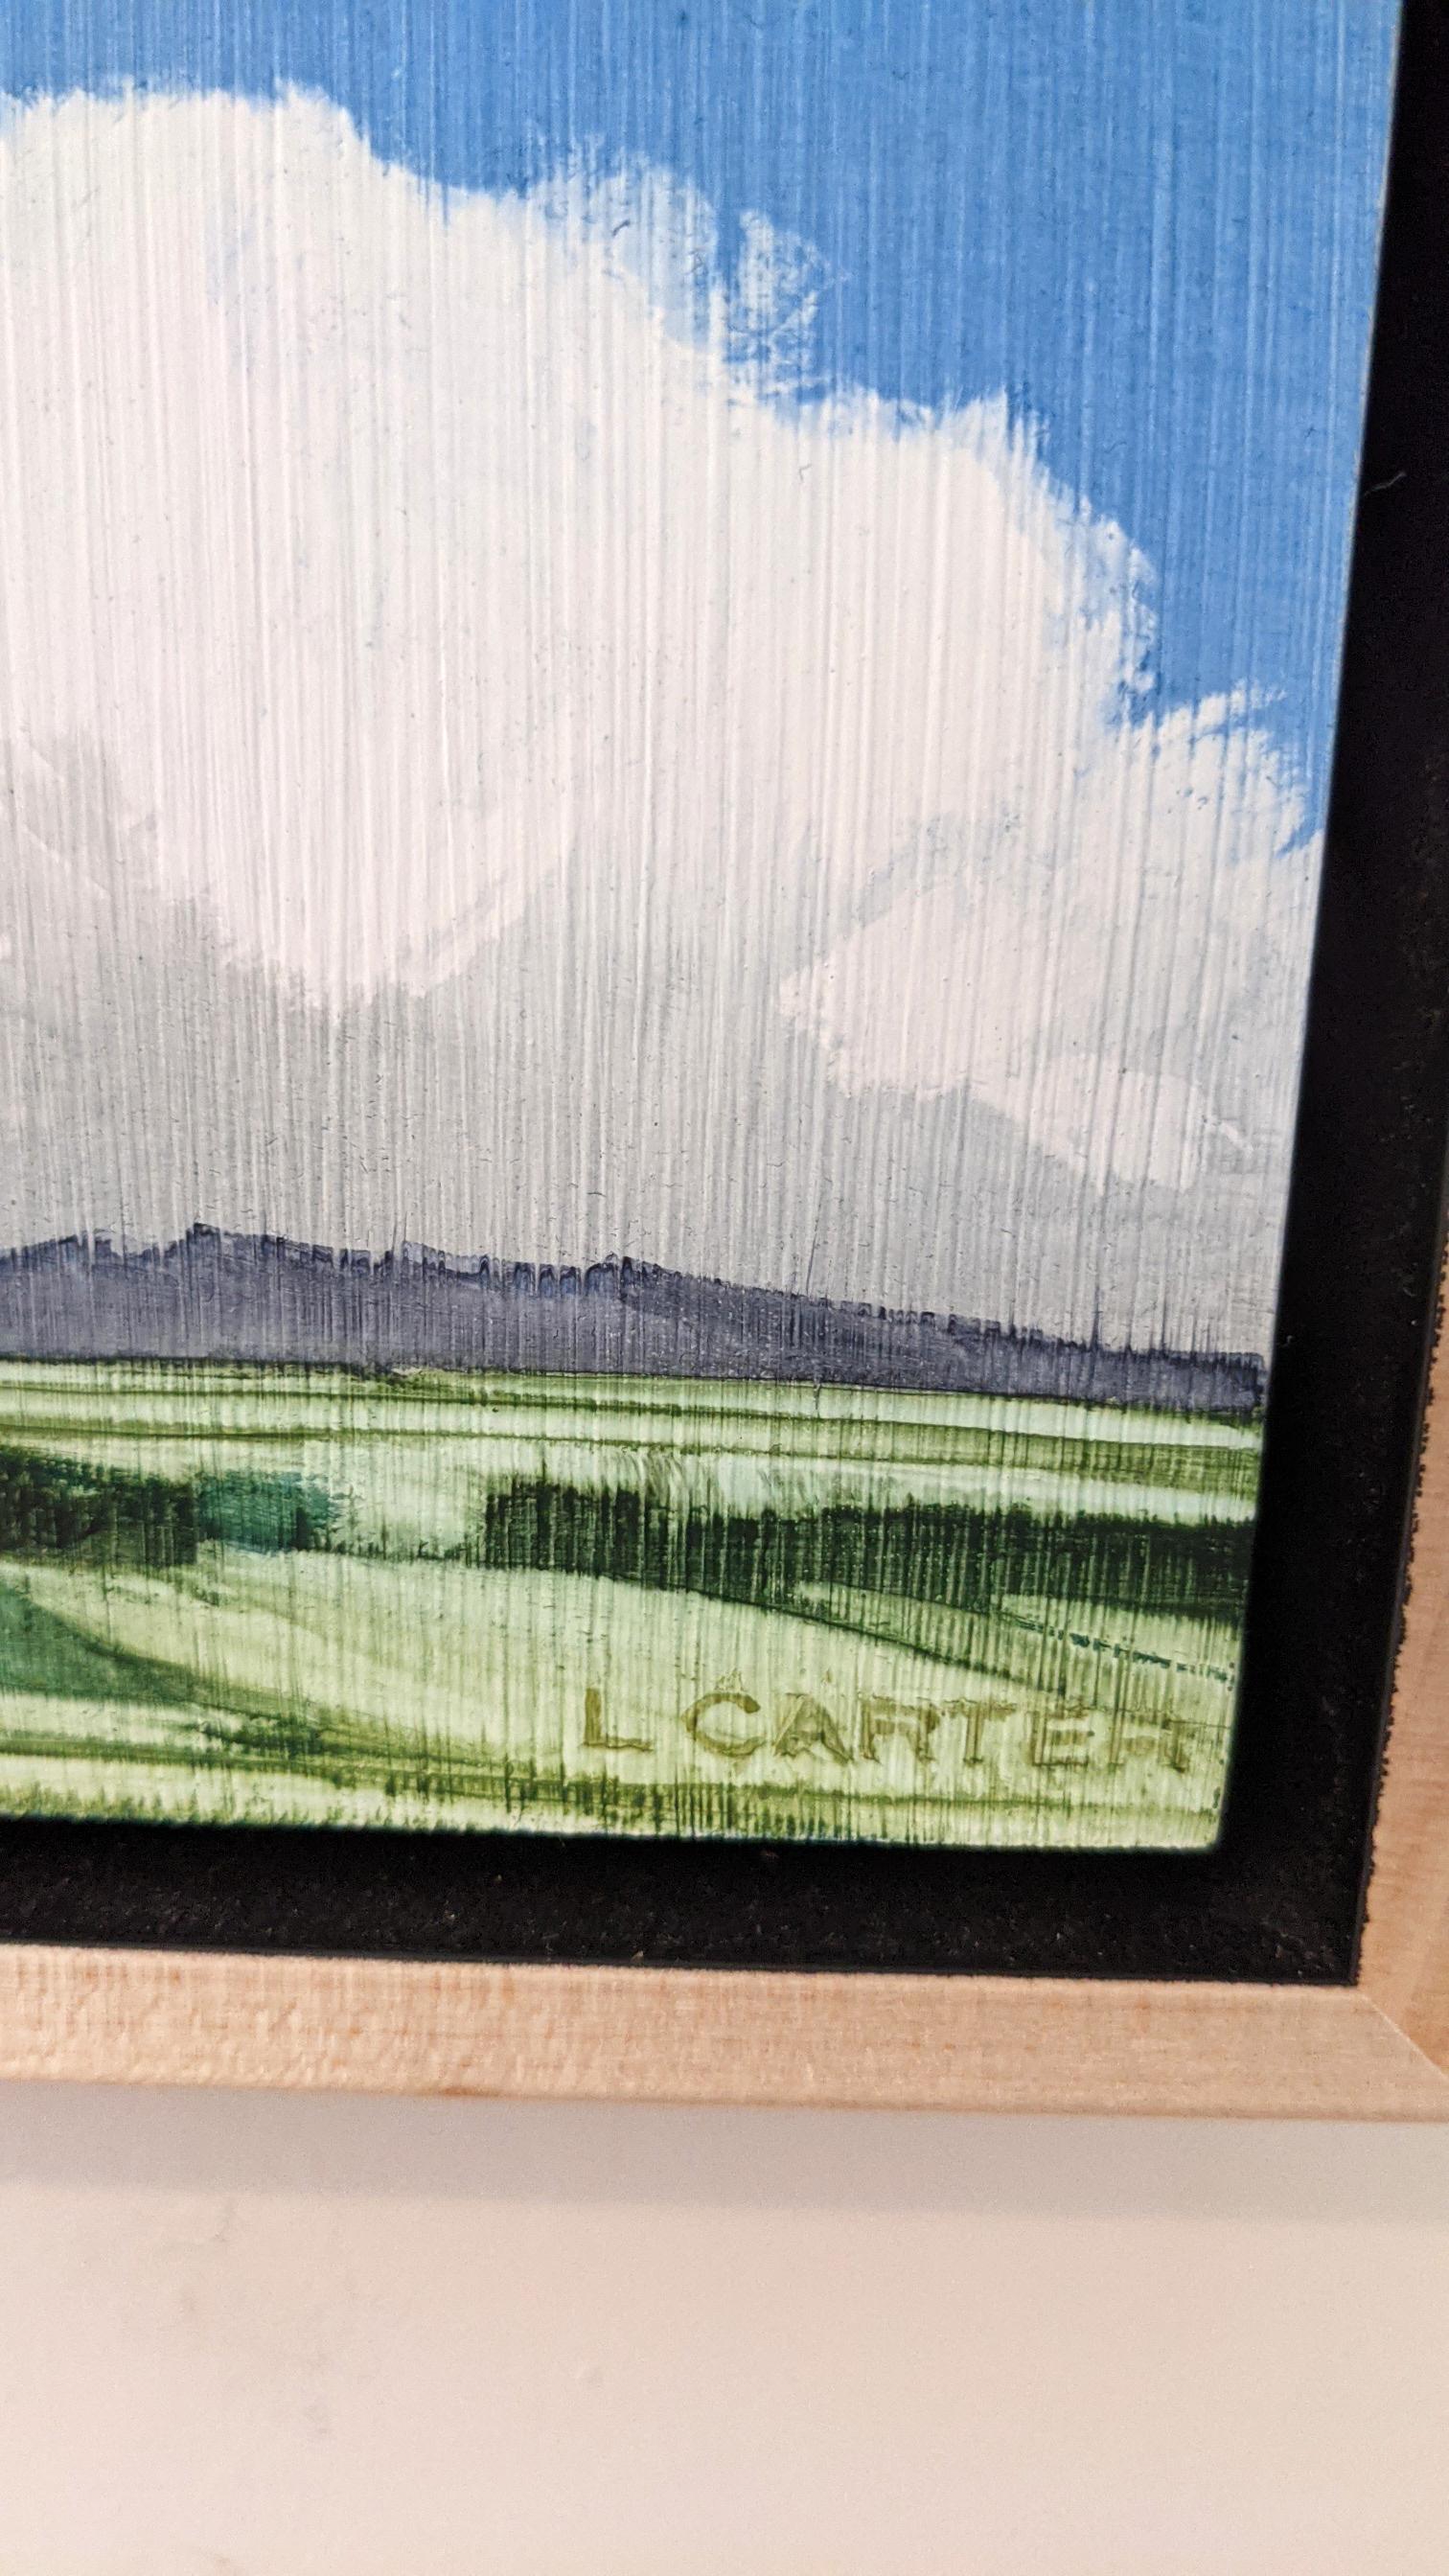 Assertive (2018), 6 x 6 pouces (taille encadrée : 7,5 x 7,5 pouces), aquarelle sur gesso sur panneau par Lindey Carter. $560

Les délicats paysages à l'aquarelle de Lindey Carter sont si peu nombreux qu'ils frôlent l'abstraction. Comme le dit